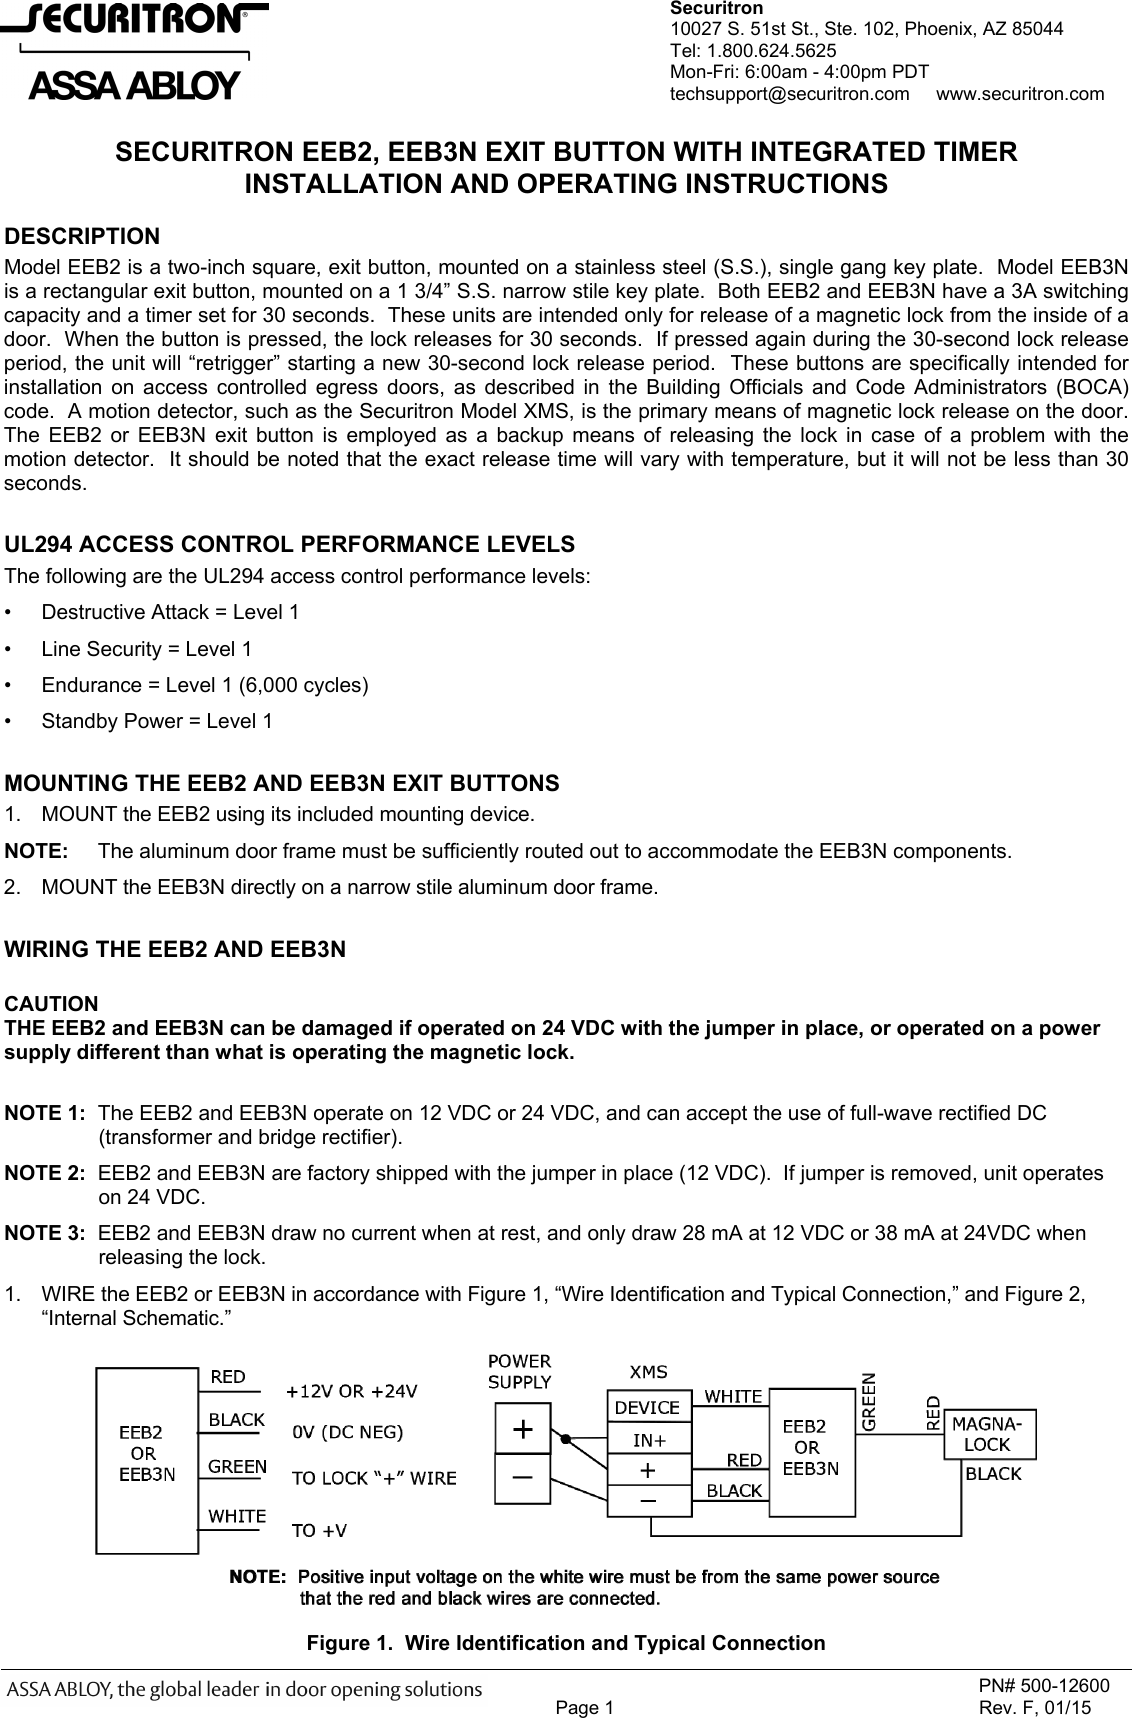 Page 1 of 2 - Securitron - 500-12600_F EEB2, EEB3N Installation And Operating Instructions EEB2 IO 500-12600 F